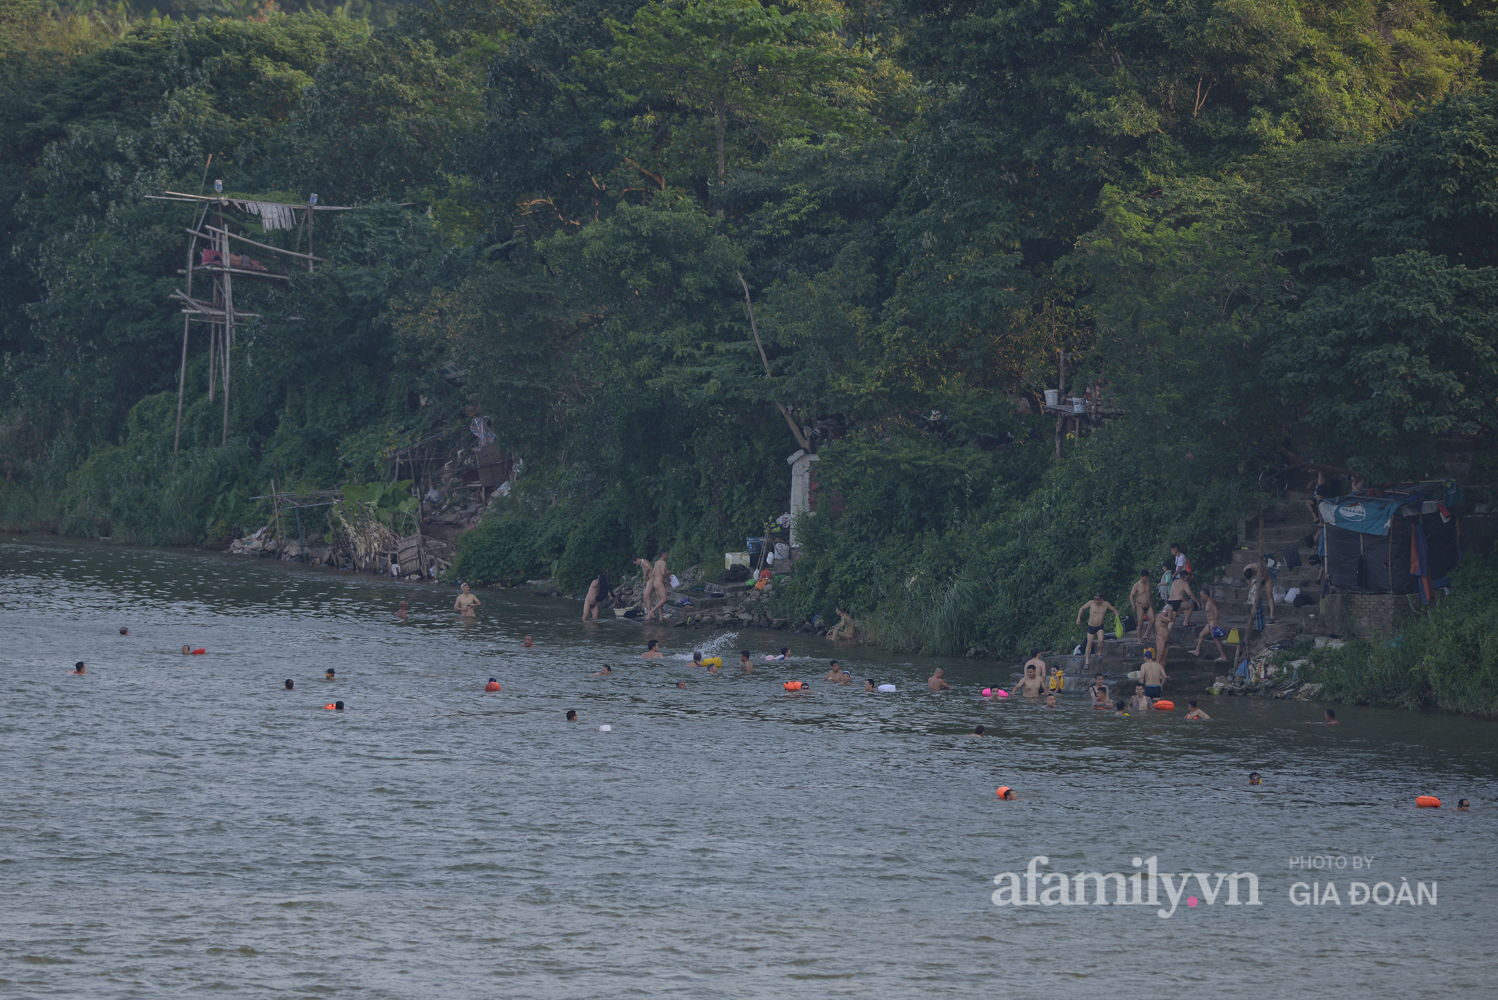 Bất chấp lệnh cấm tụ tập đông người, người Hà Nội vẫn đổ xô ra sông Hồng giải nhiệt - Ảnh 12.